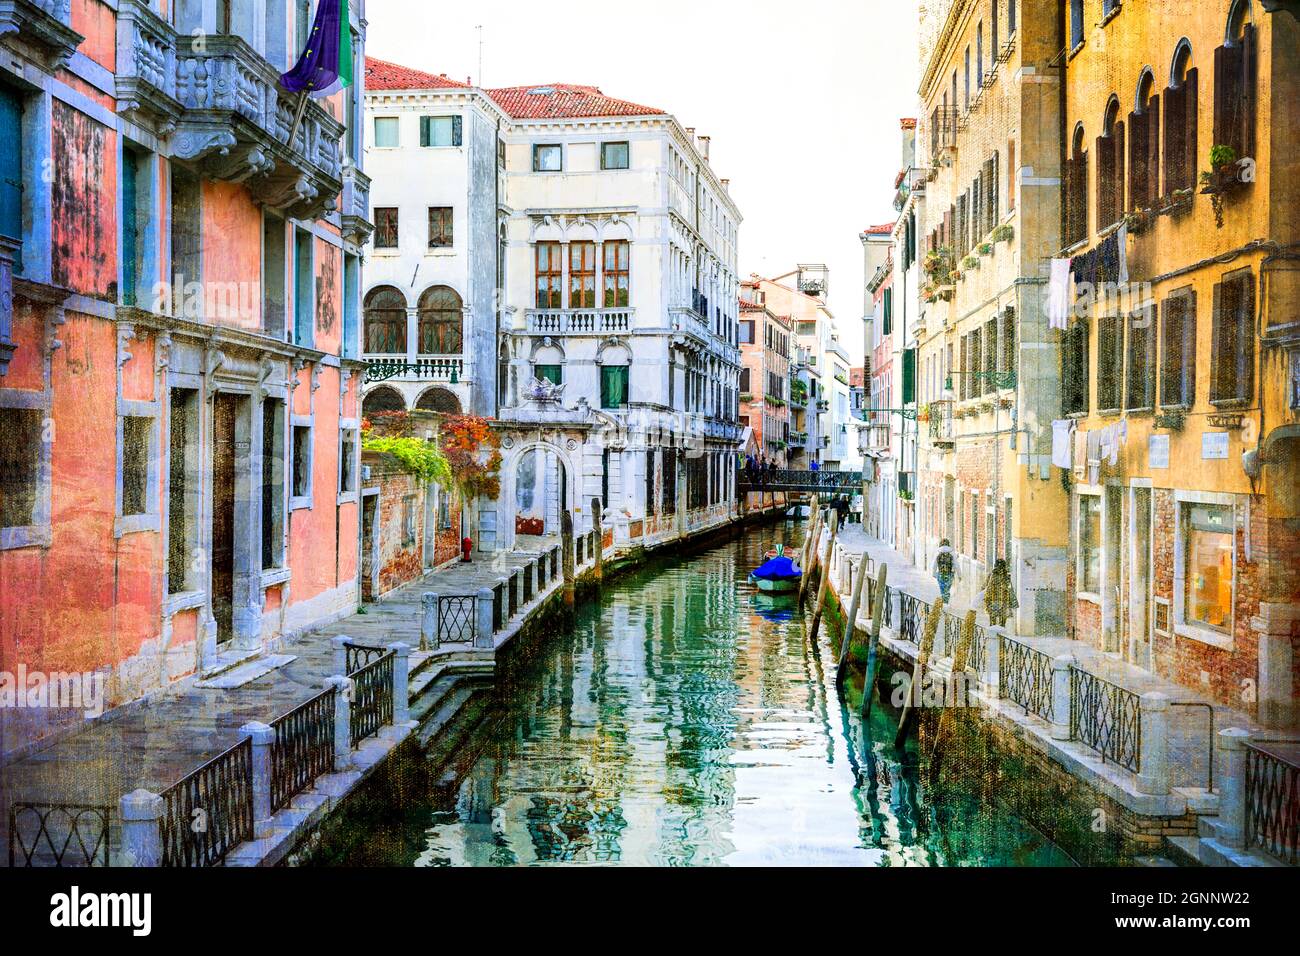 Venecia, Italia. Románticos canales venecianos con calles estrechas. Imagen artística en estilo de pintura retro Foto de stock